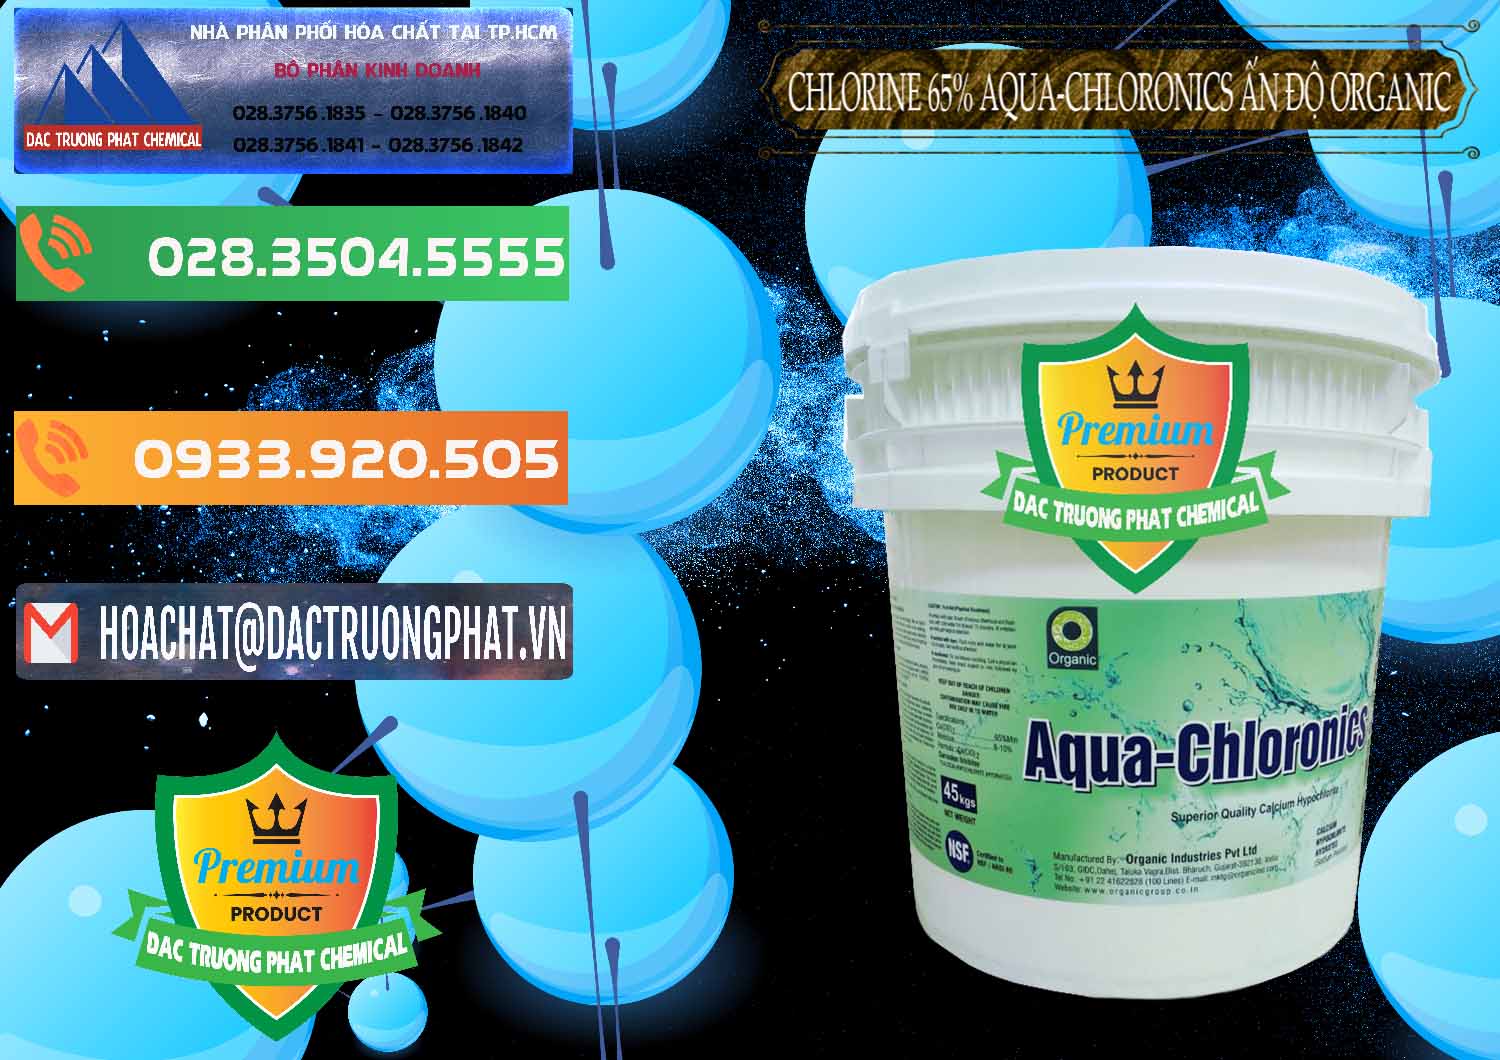 Đơn vị chuyên phân phối _ bán Chlorine – Clorin 65% Aqua-Chloronics Ấn Độ Organic India - 0210 - Đơn vị chuyên kinh doanh & phân phối hóa chất tại TP.HCM - hoachatxulynuoc.com.vn